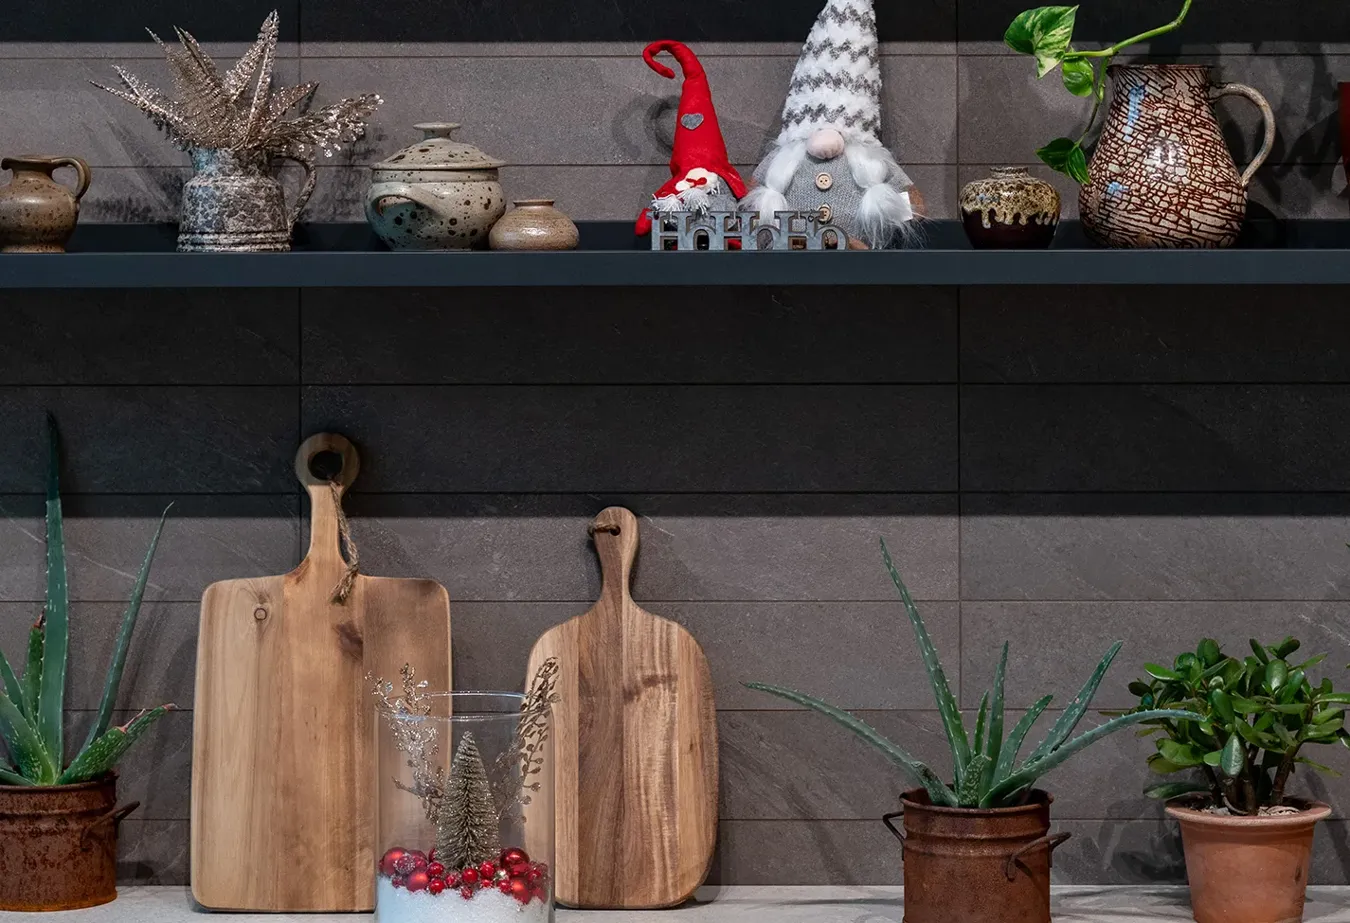 Уютная кухня с черной плиткой Brystone, традиционными рождественскими украшениями и аксессуарами из натурального дерева.